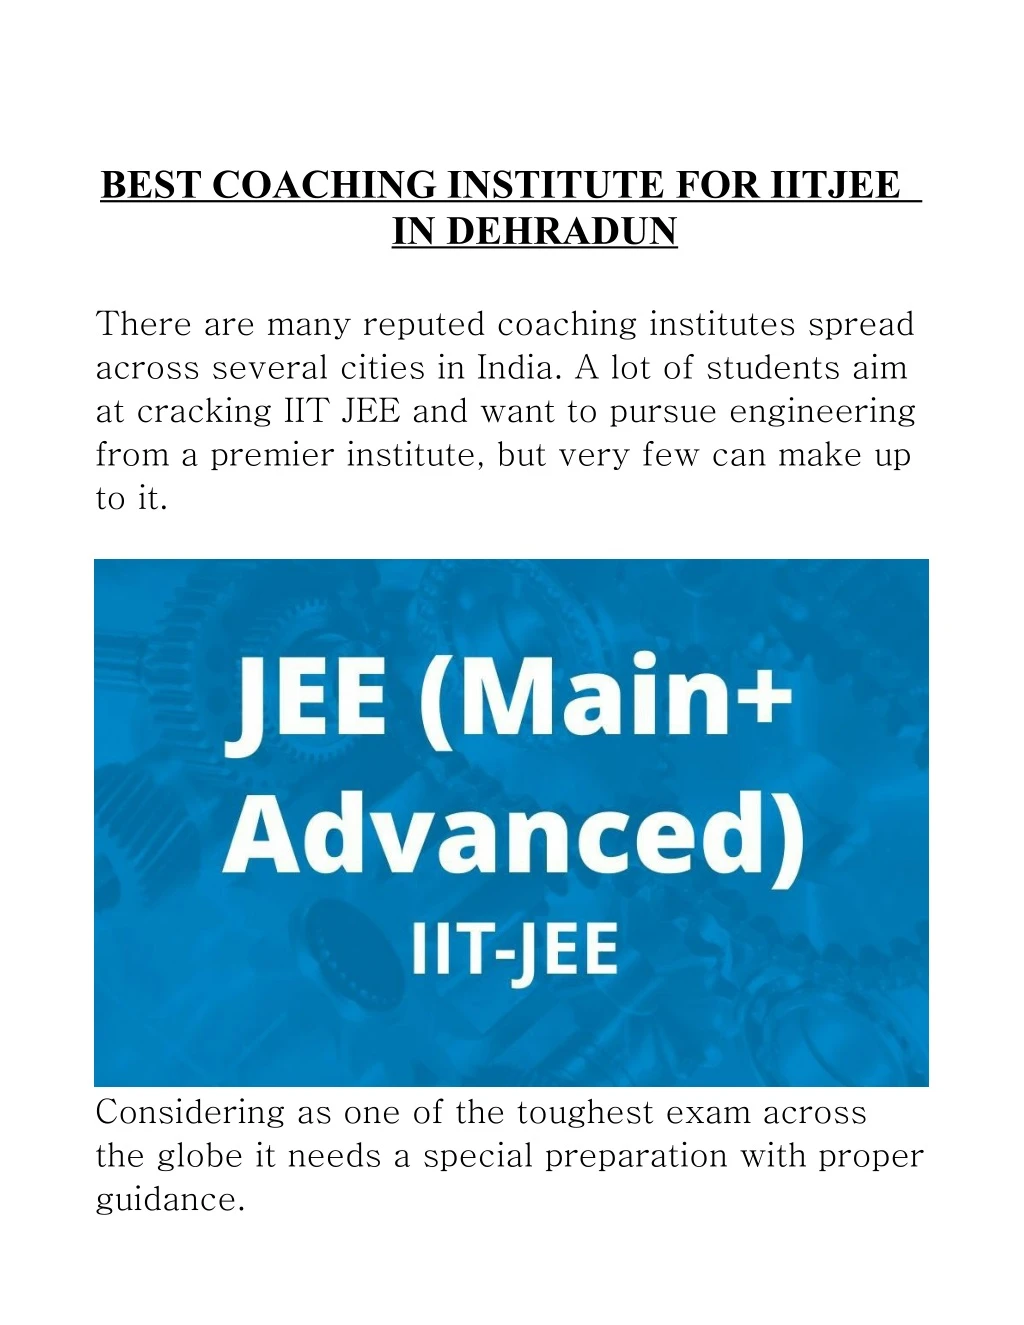 best coaching institute for iitjee in dehradun